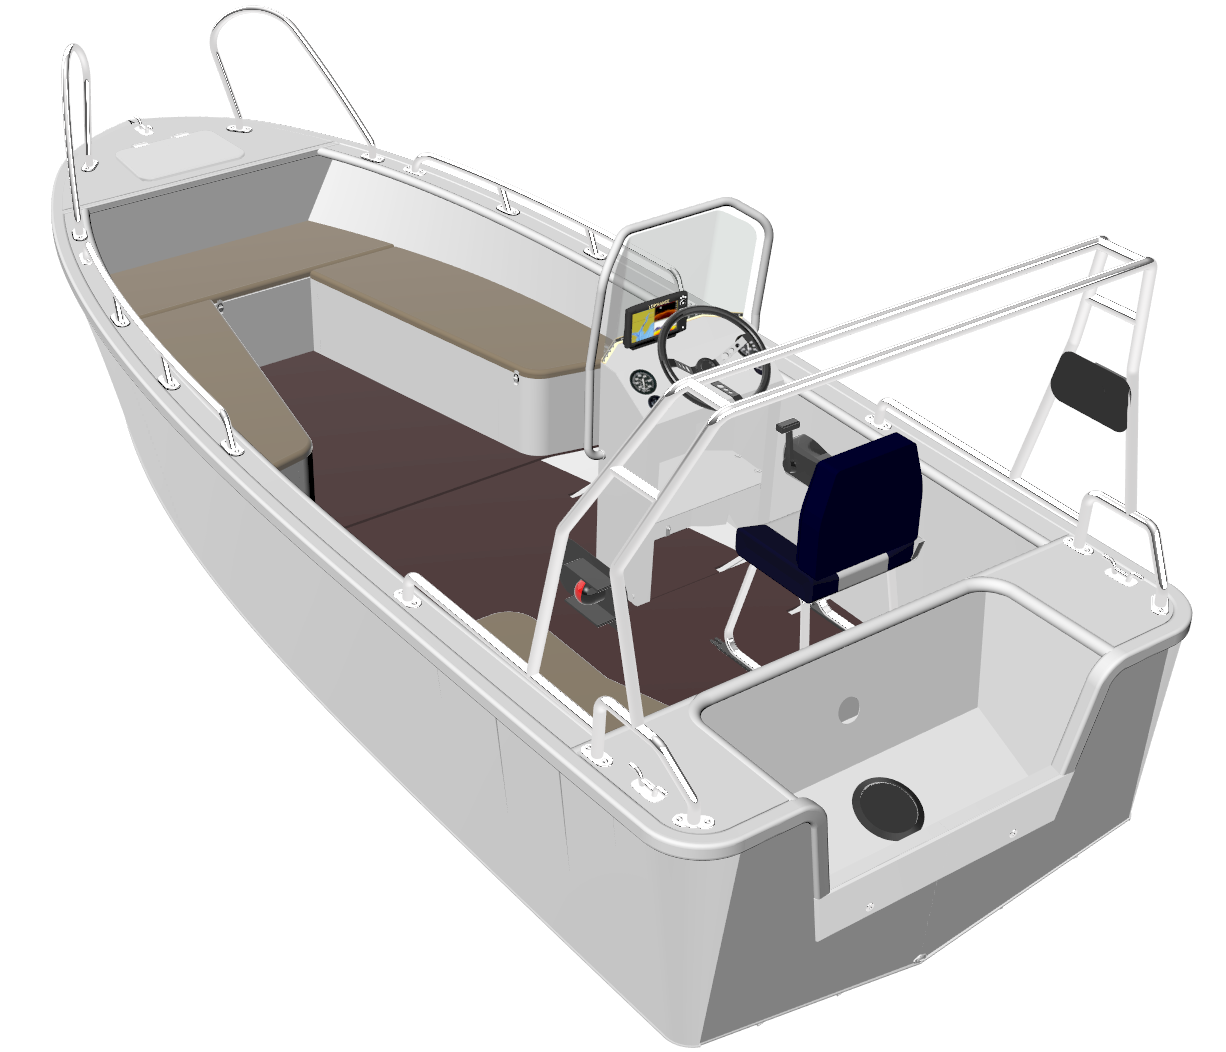 Эскизное проектирование и разработка технического проекта маломерного судна (моторно-гребная лодка с корпусом из алюминиевого сплава ДСС 4,7)